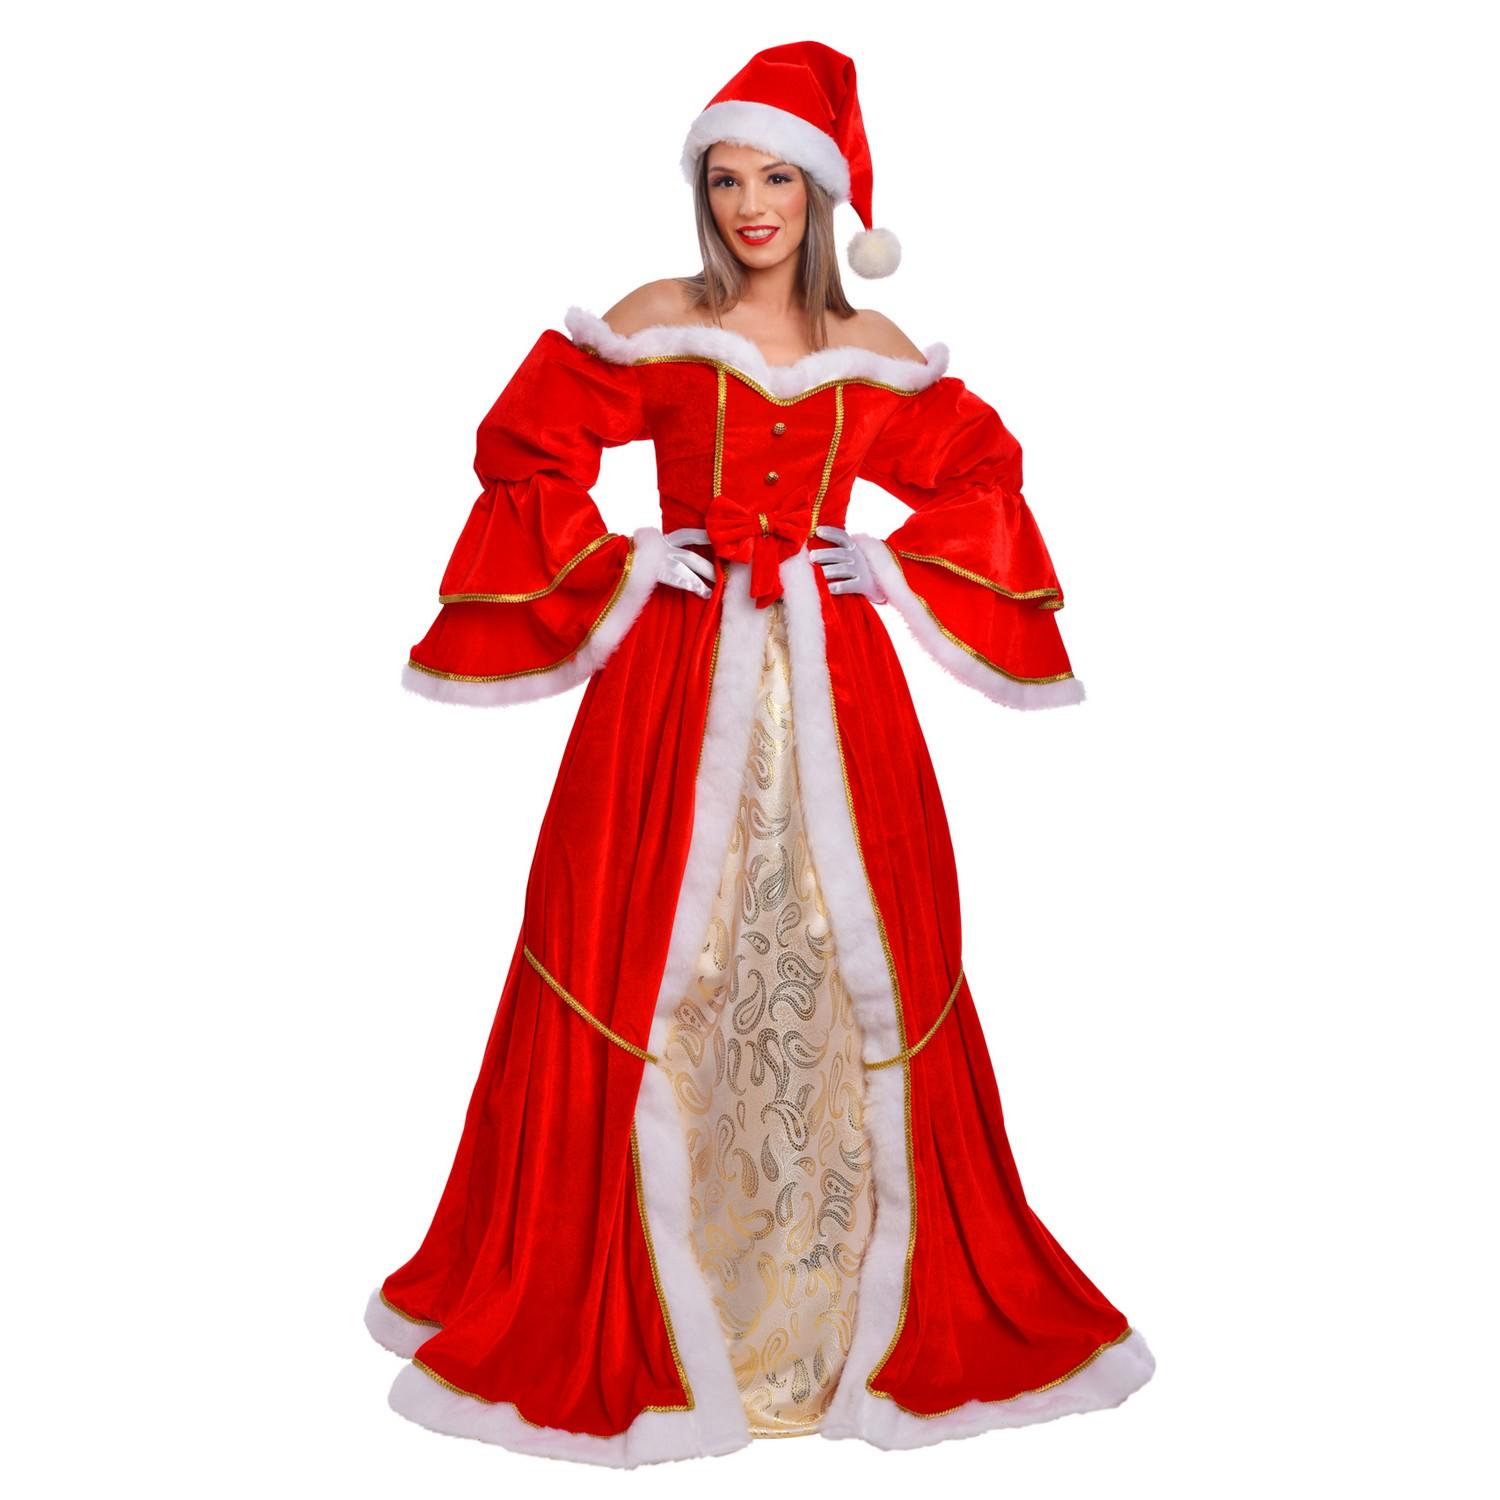 Noël Personnages FemmeDéguisements et accessoires pour costumes